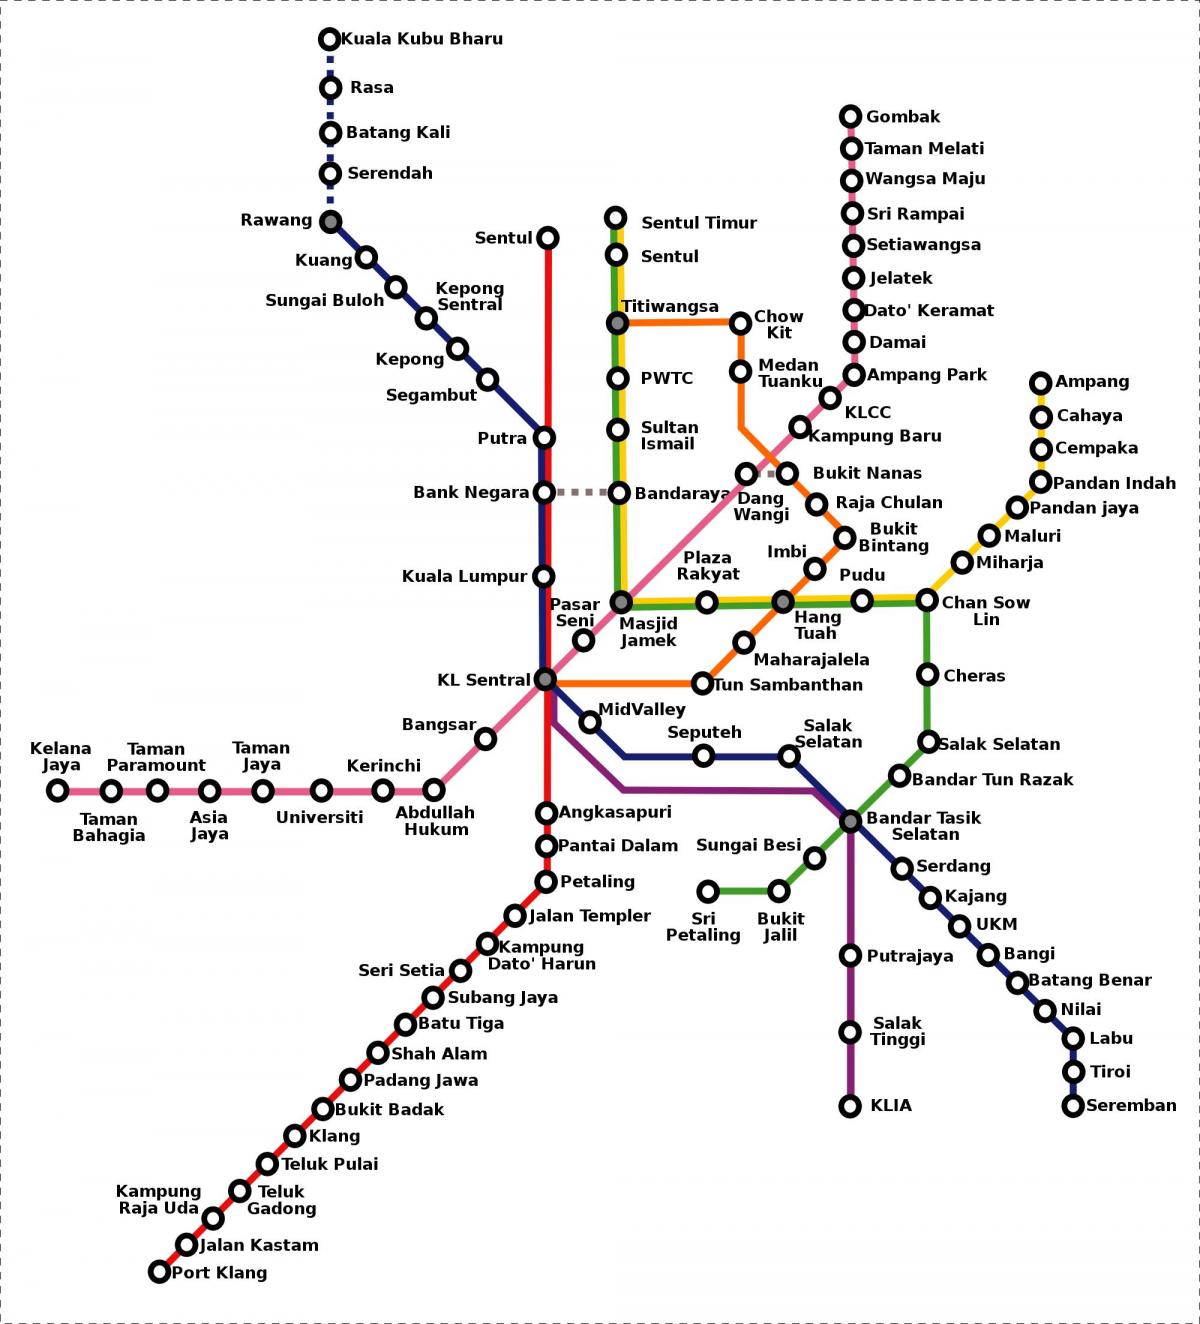 マレーシアの地下鉄図